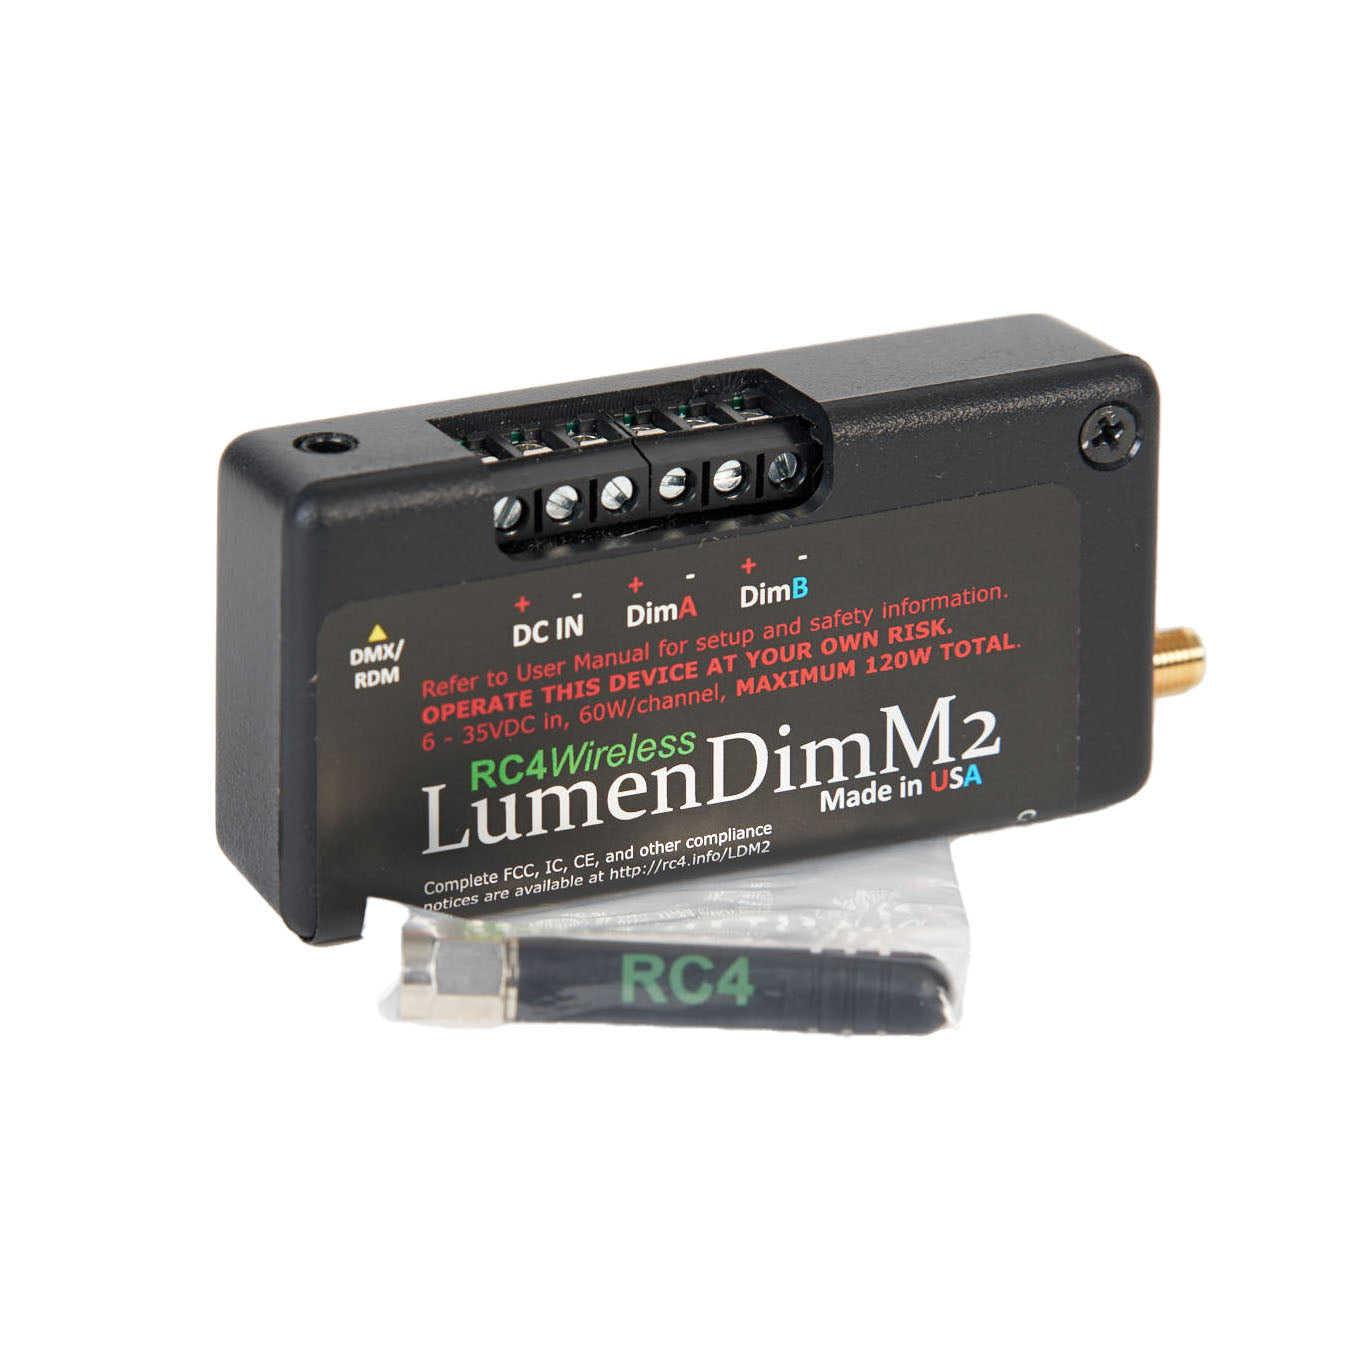 LumenDimM2 - 2 Channel CRMX Wireless Dimmer